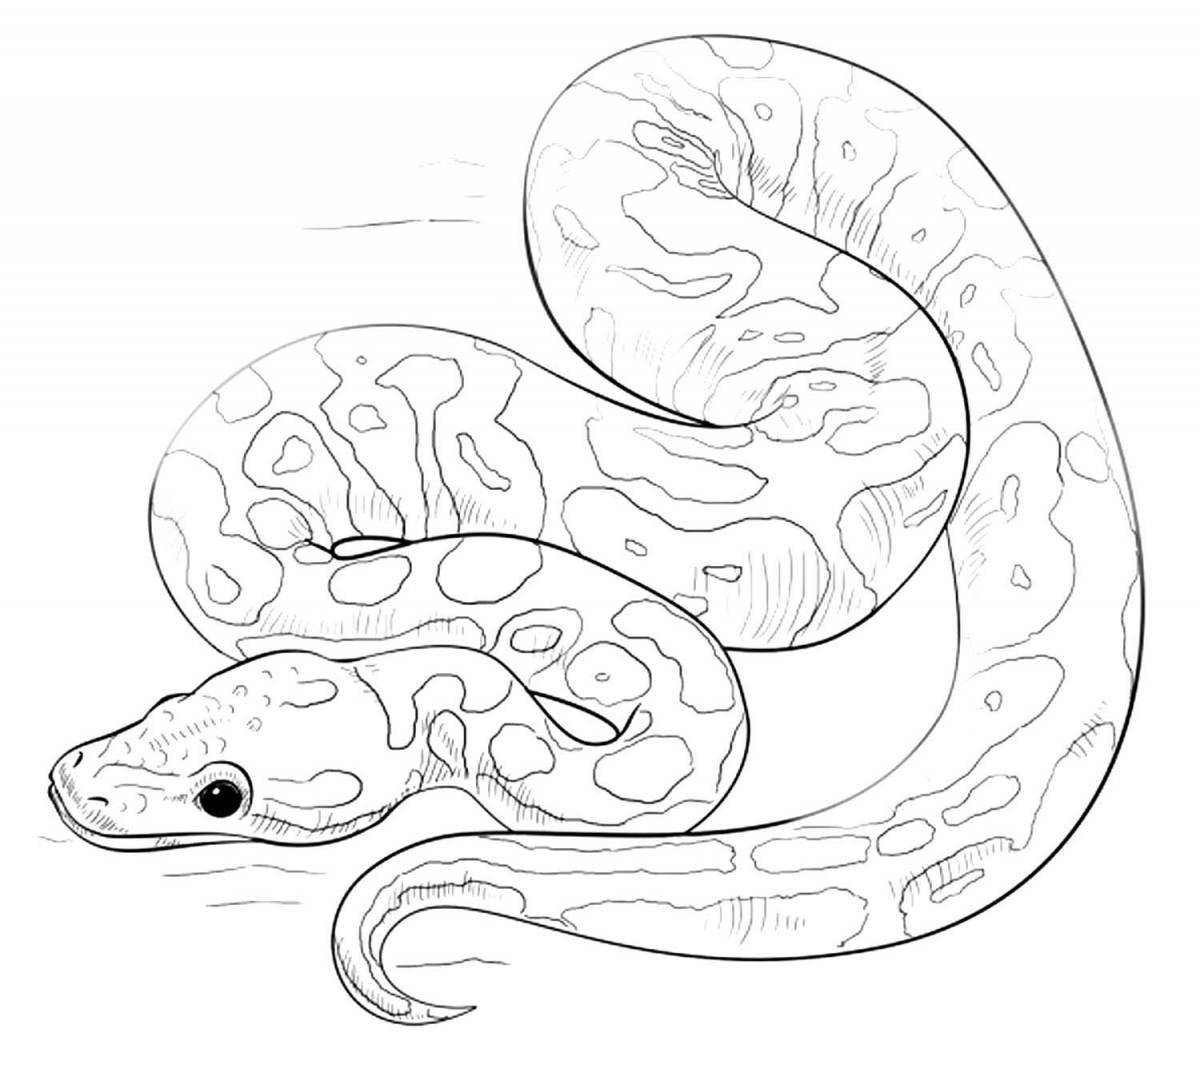 Python #26